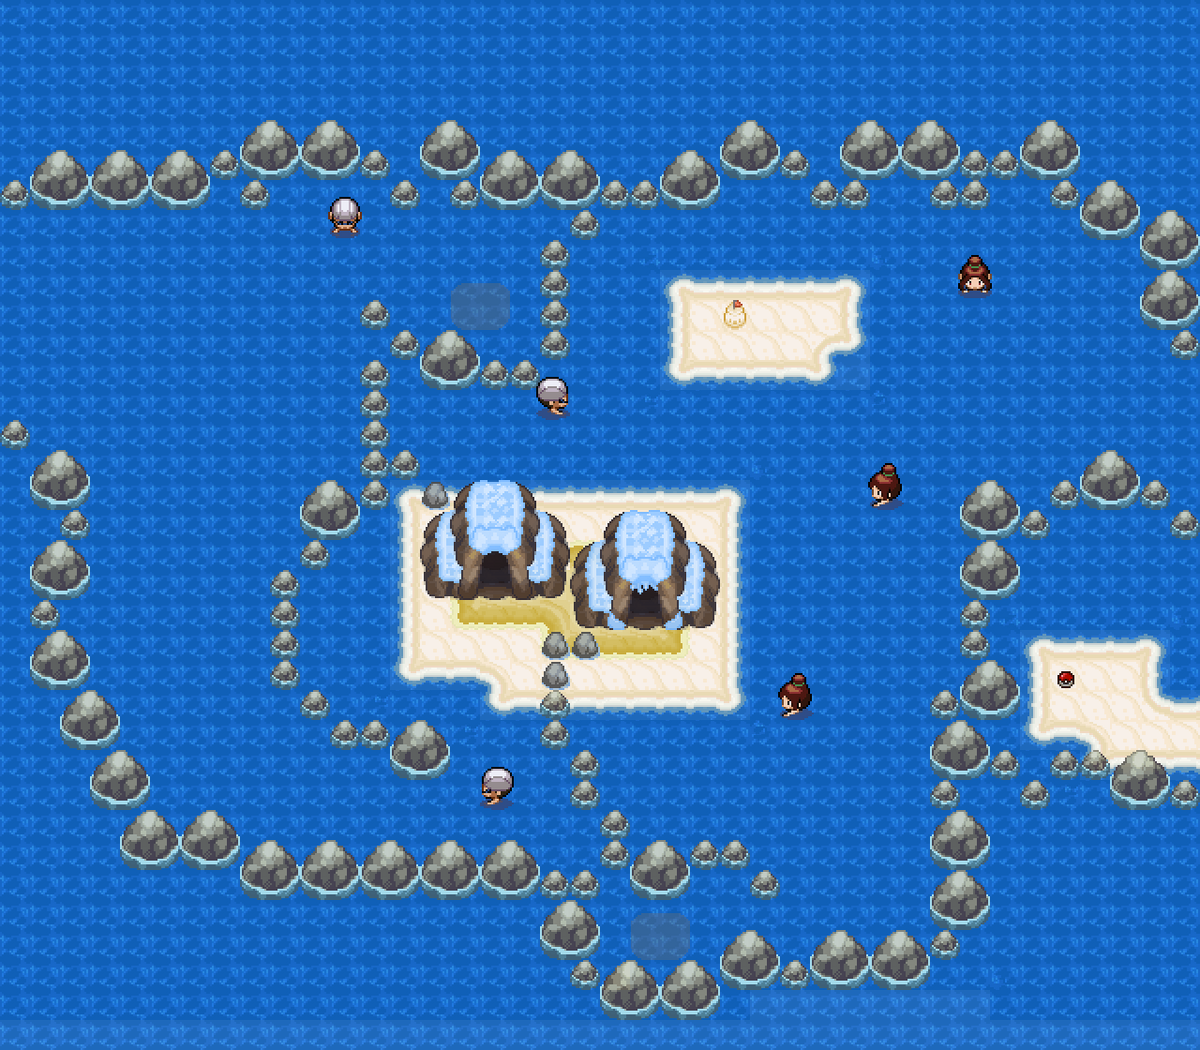 Route 5, Pokémon Infinite Fusion Wiki